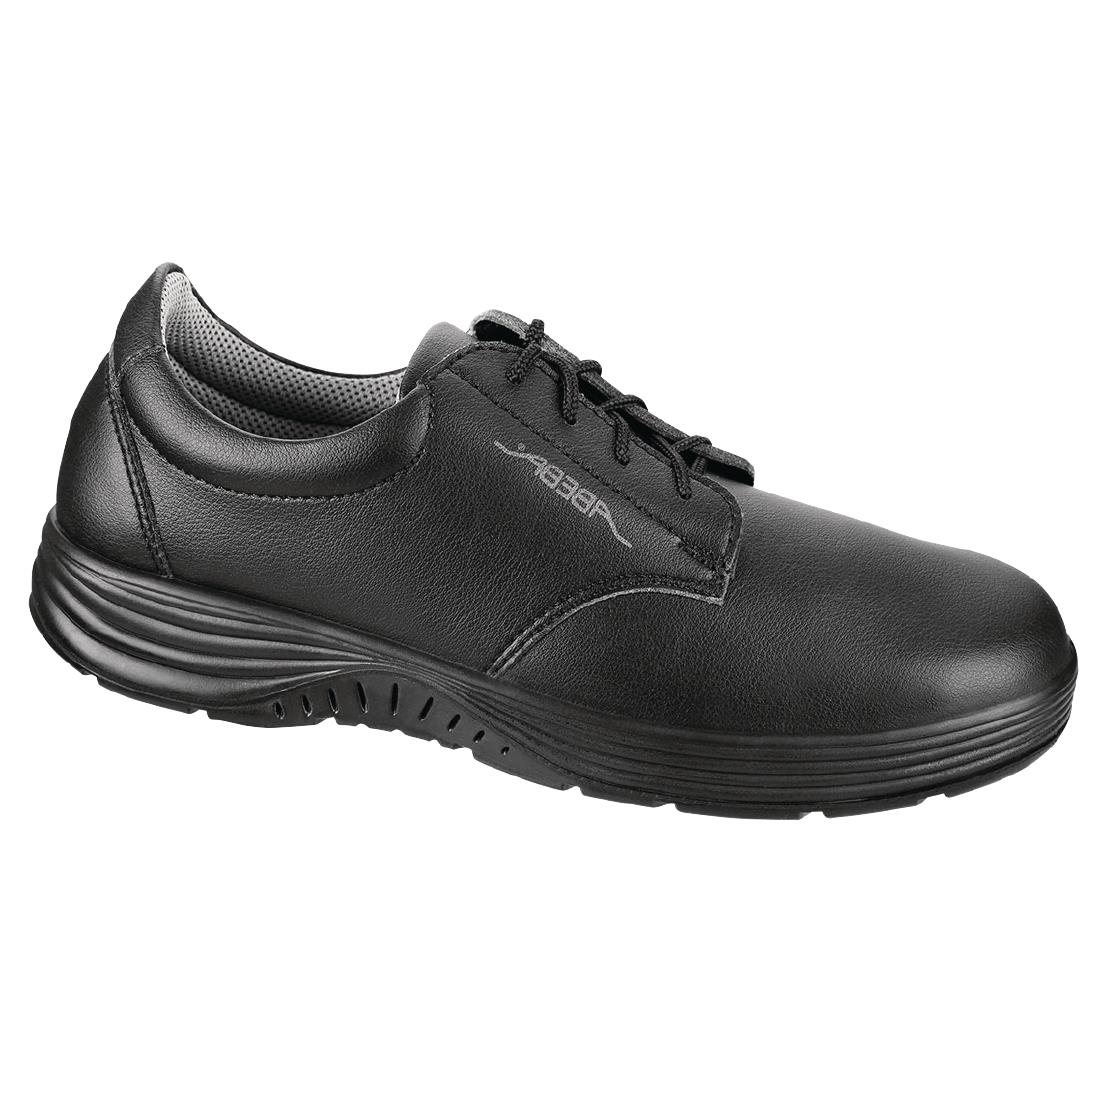 Abeba X-Light Microfiber Lace Up Safety Shoe Black 39